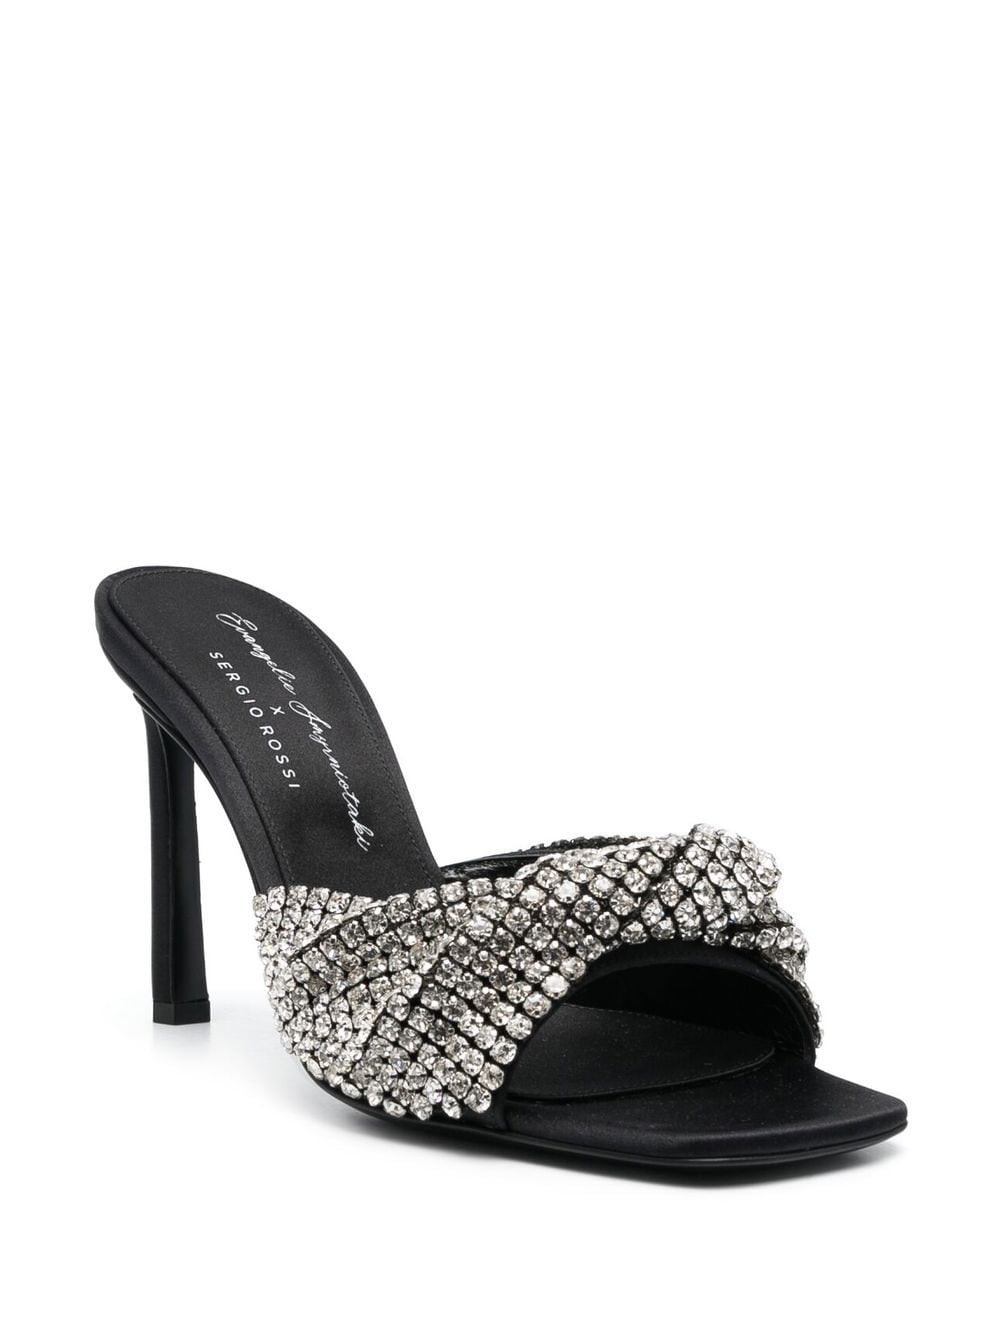 Image 2 of Sergio Rossi Evangelie 95mm crystal-embellished sandals